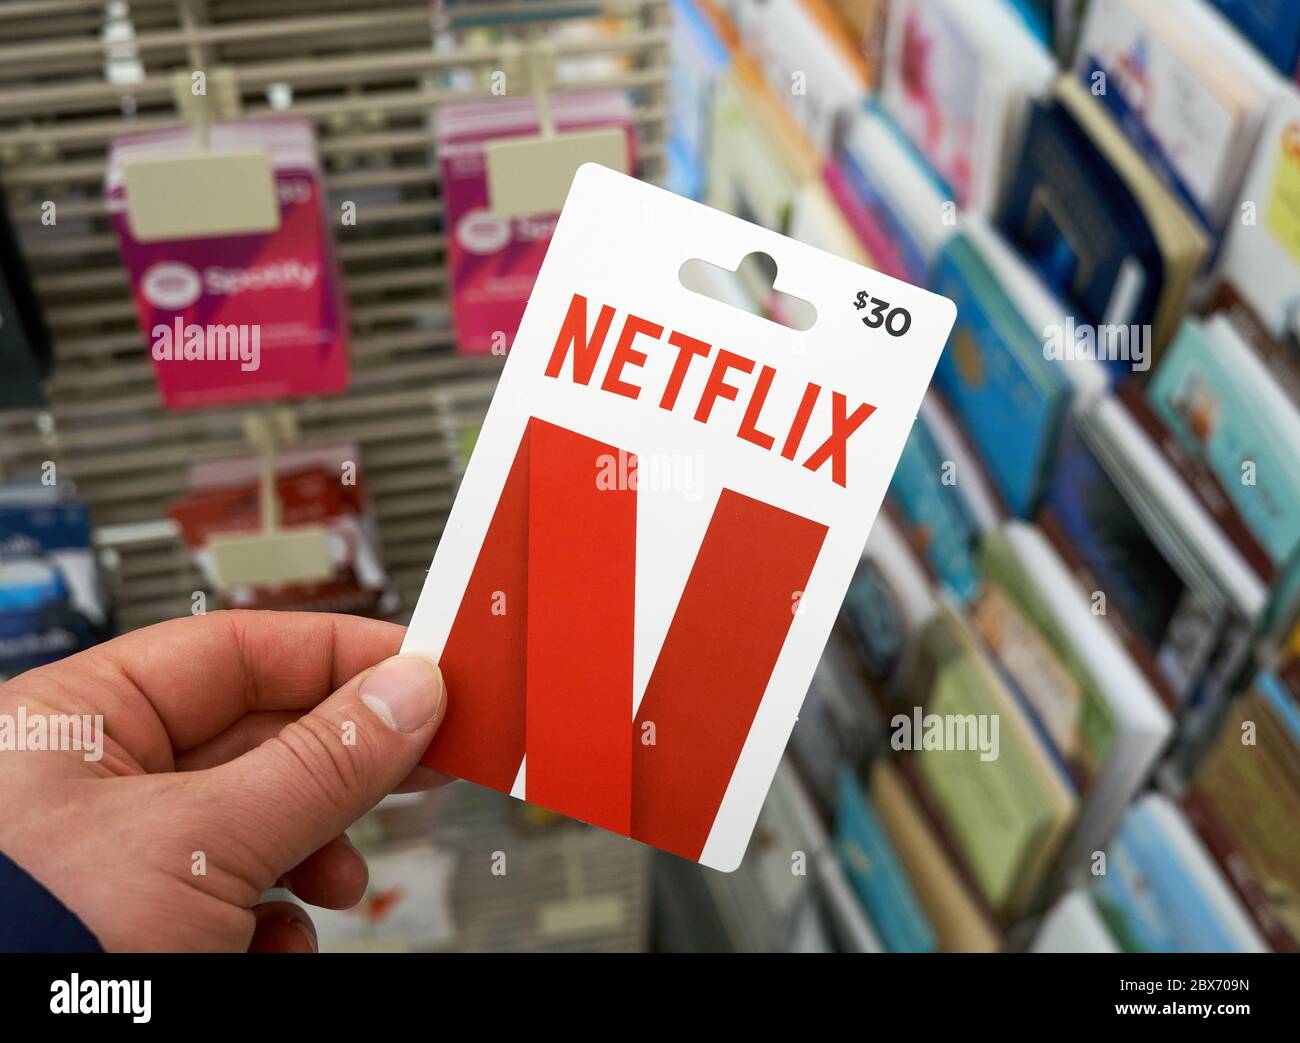 Montreal, Canada - 03 maggio 2020: Carta regalo Netflix in una mano su uno stand con carte regalo. Netflix è un servizio di streaming che consente di guardare programmi TV Foto Stock